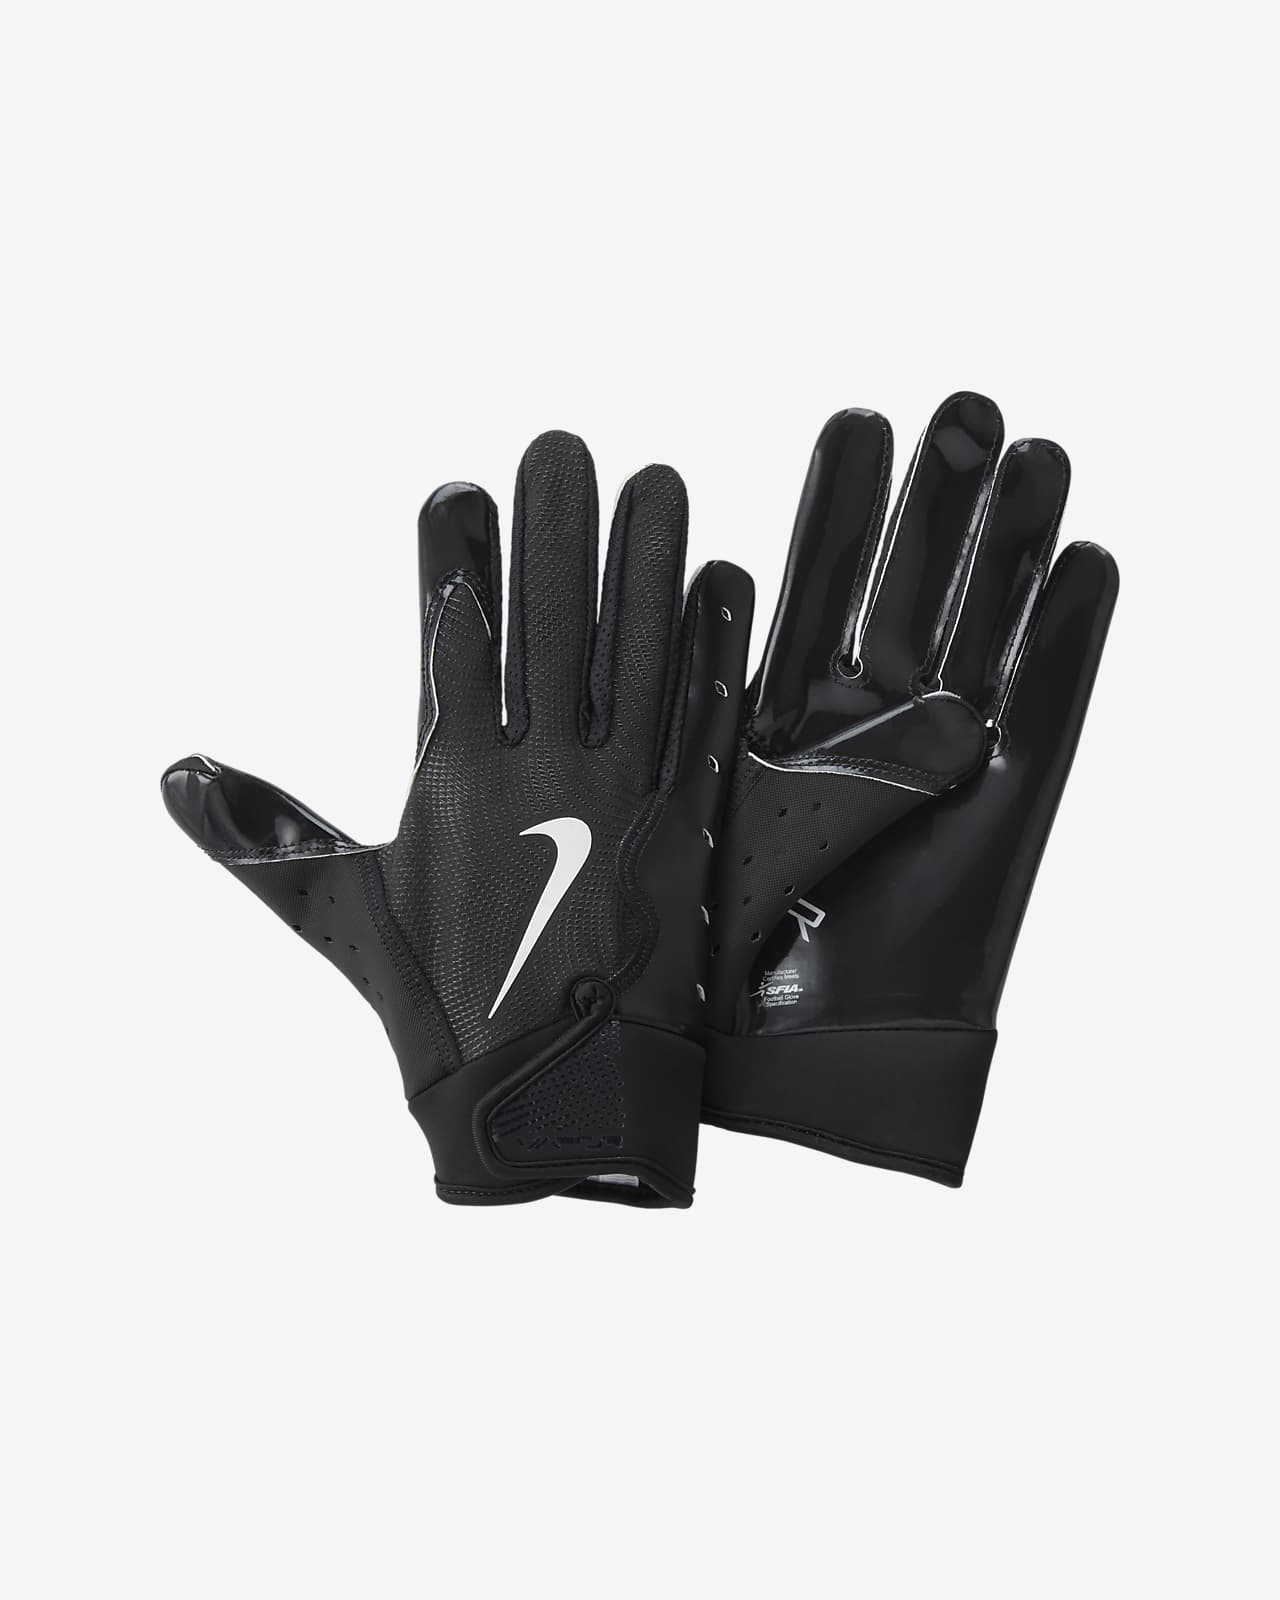 Nike Vapor Jet 8.0 Kids' Football Gloves